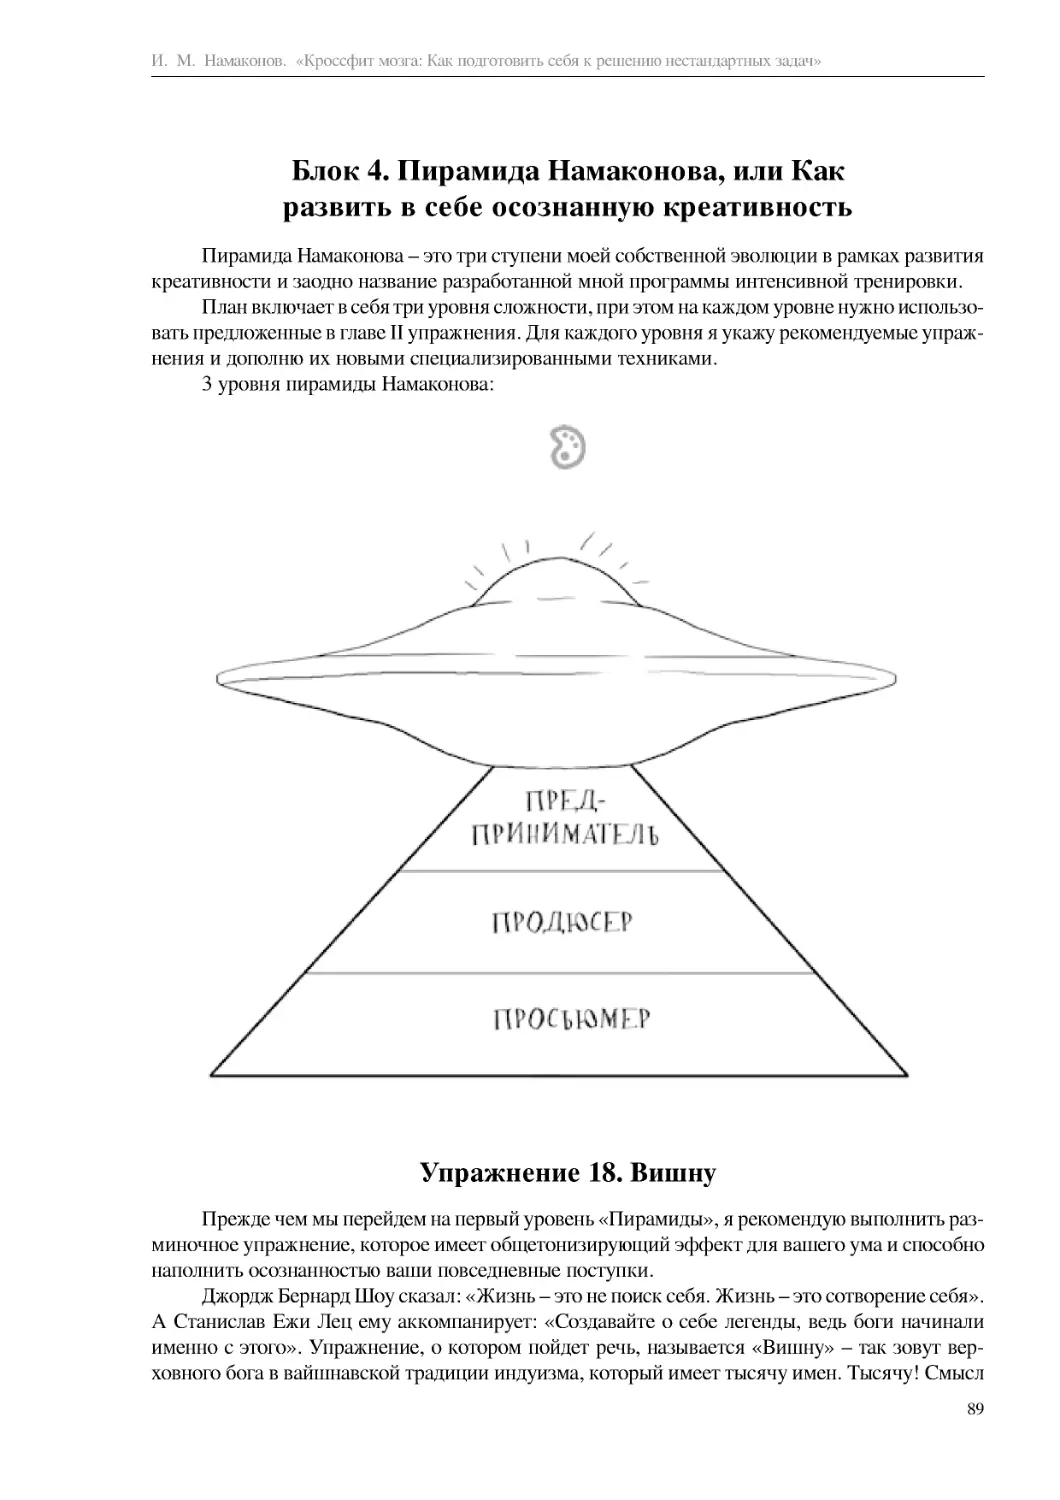 Блок 4. Пирамида Намаконова, или Как развить в себе осознанную креативность
Упражнение 18. Вишну